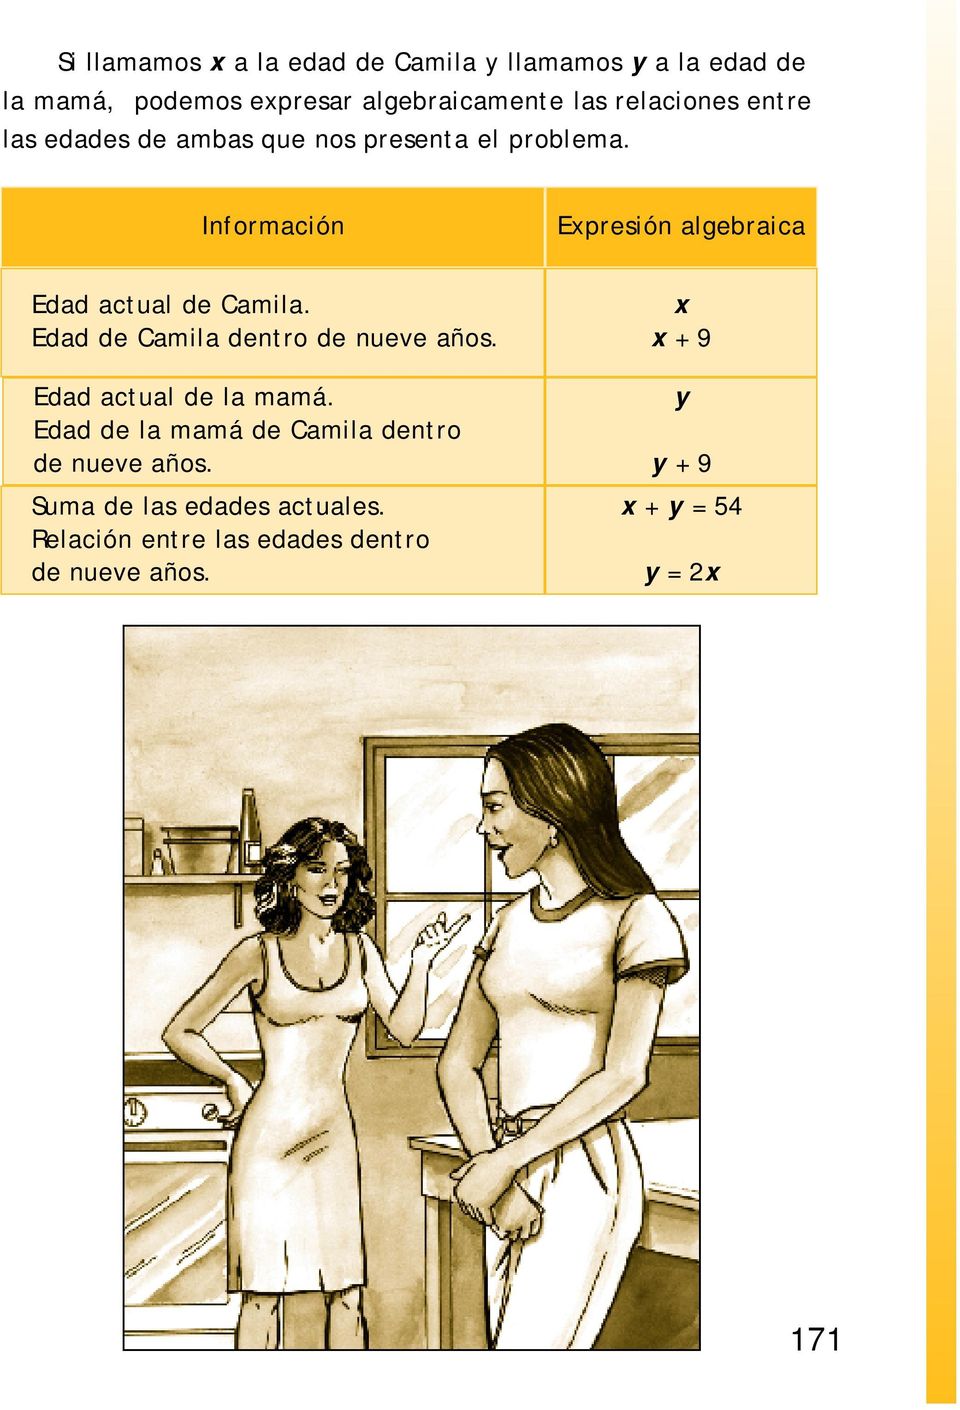 Información Epresión algebraica Edad actual de Camila. Edad de Camila dentro de nueve años.